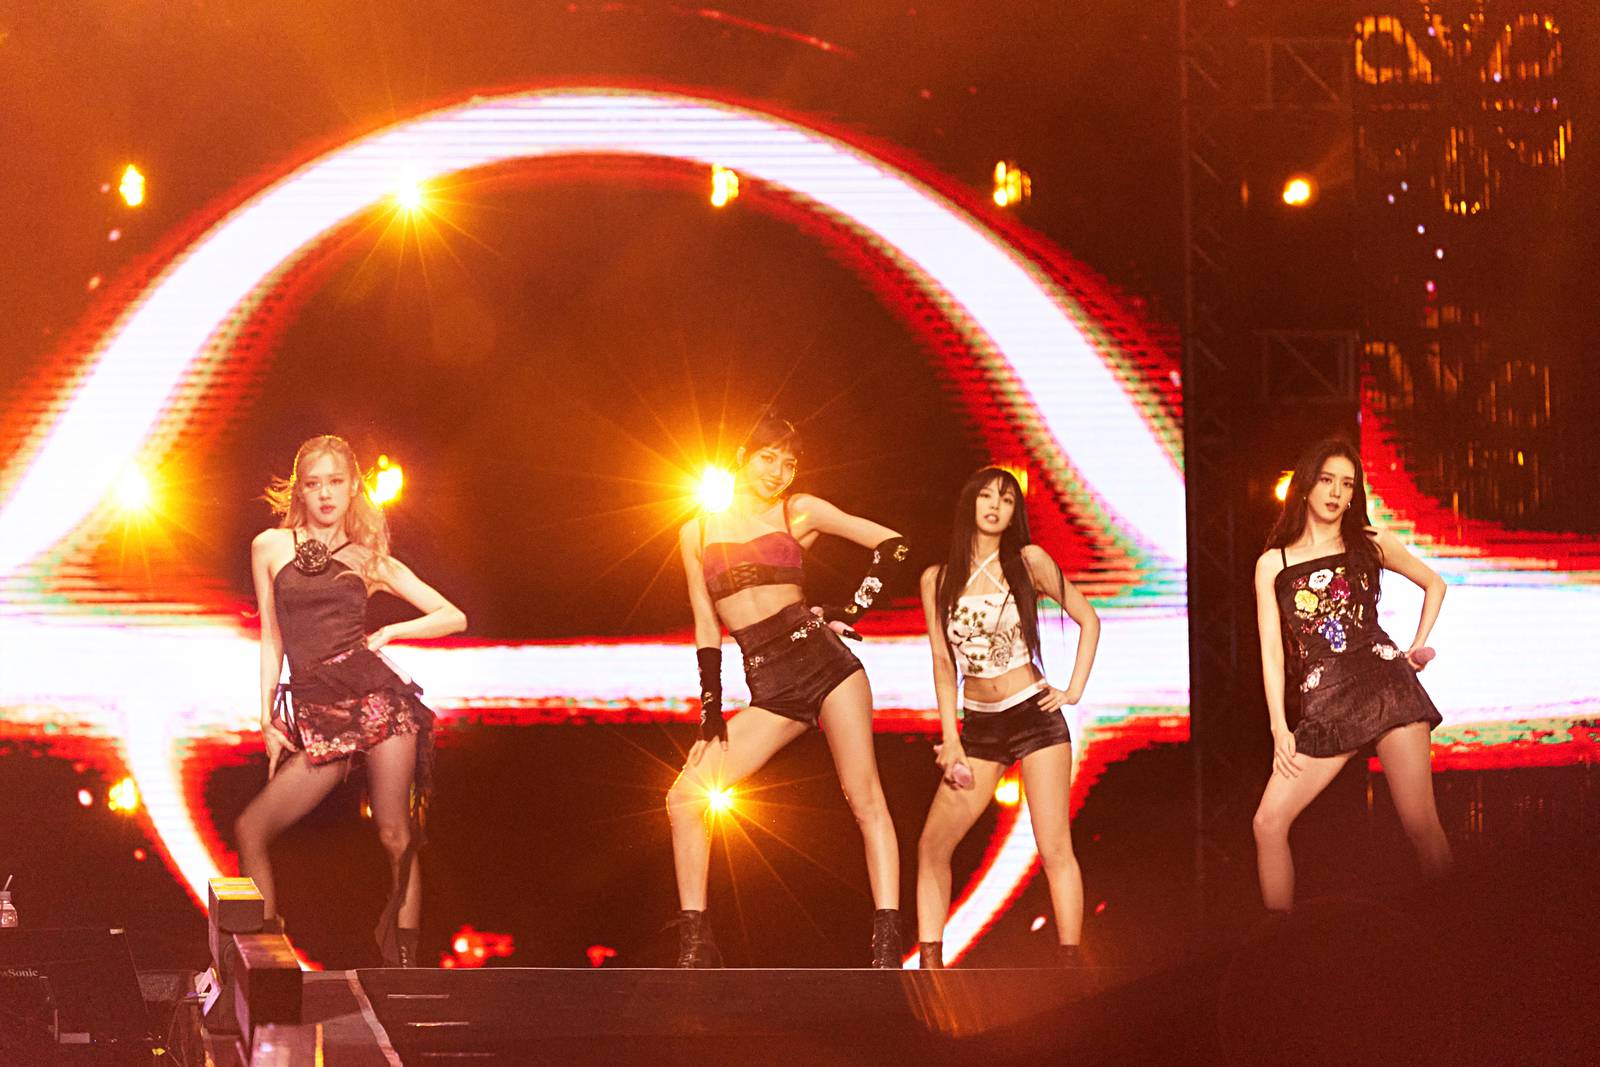 Blackpink's Abu Dhabi concert review: K-pop's biggest girl group ...